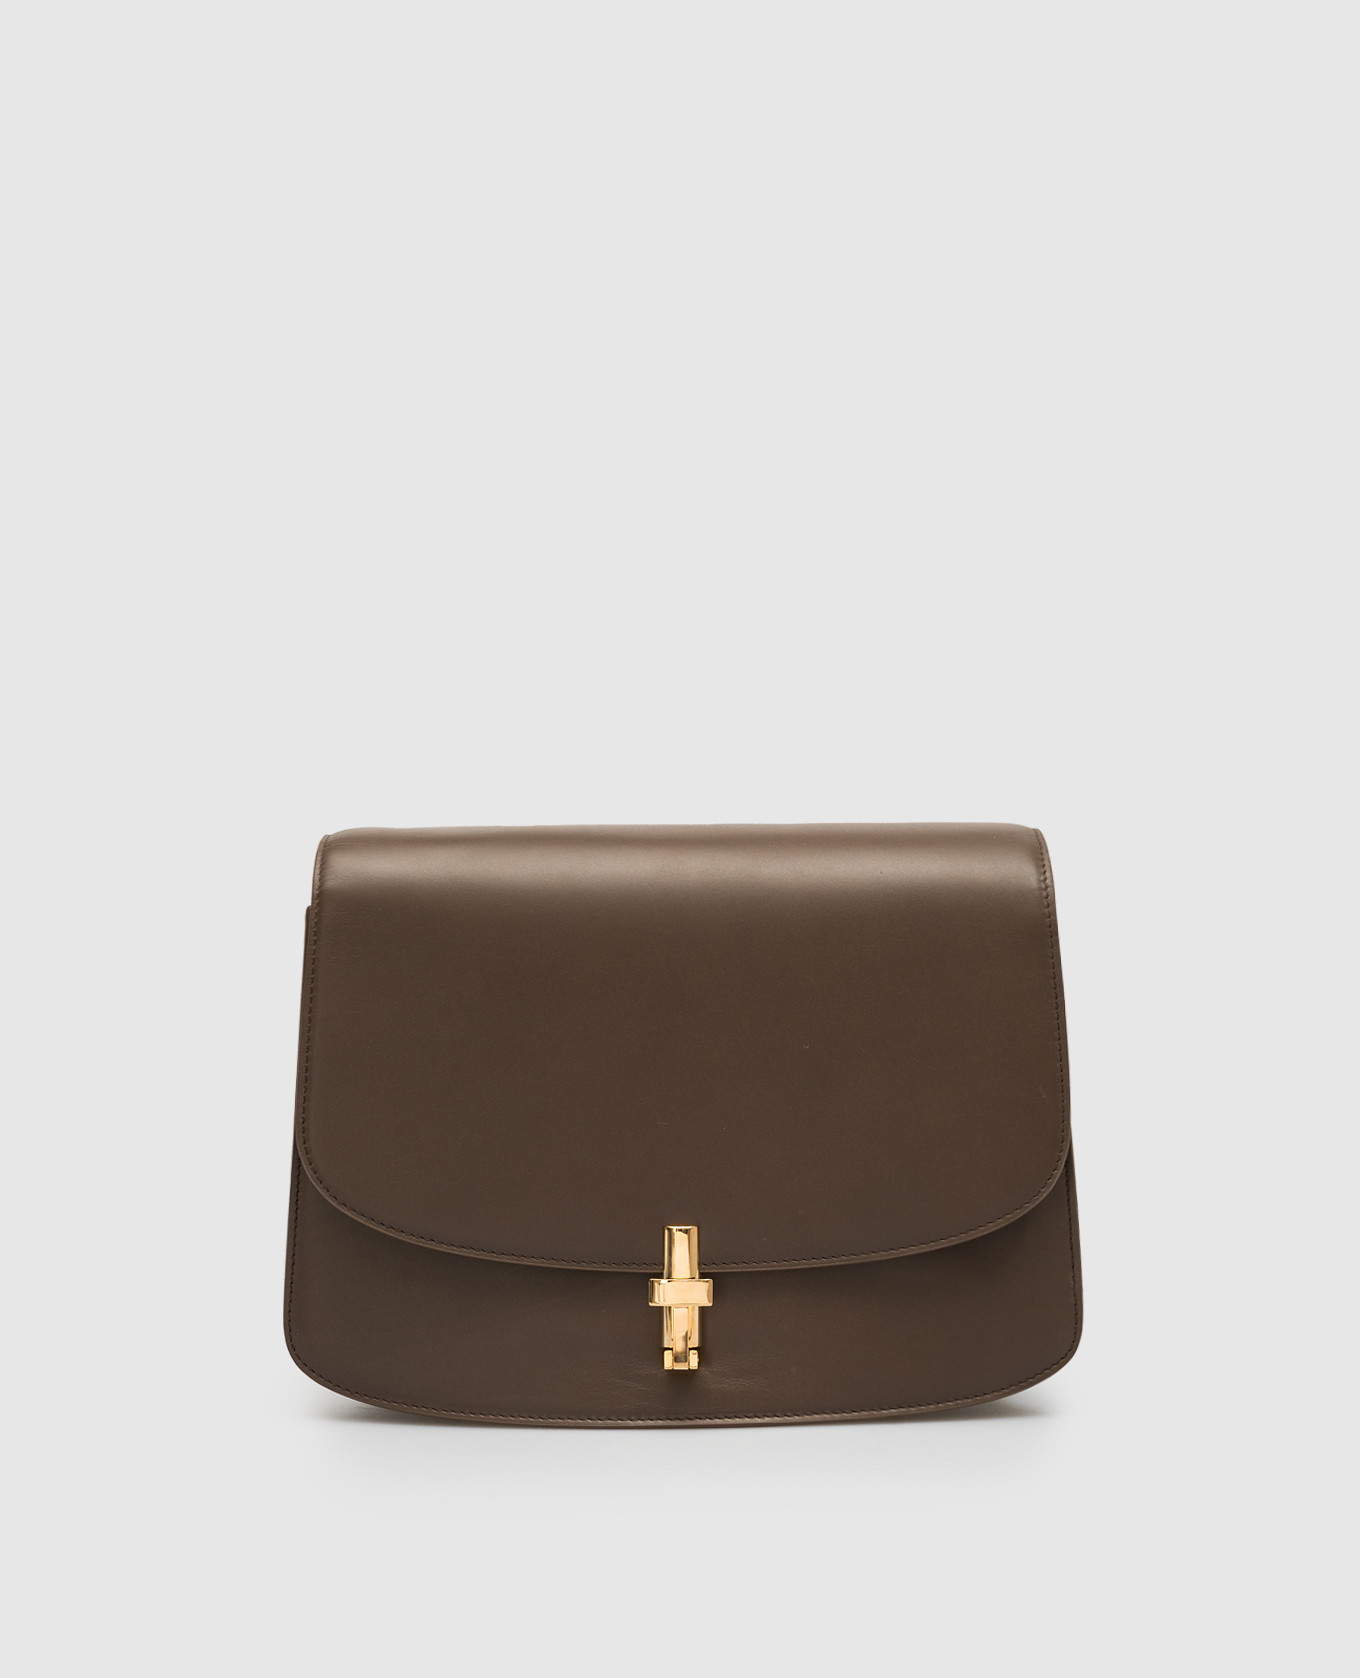 Sofia brown leather messenger bag